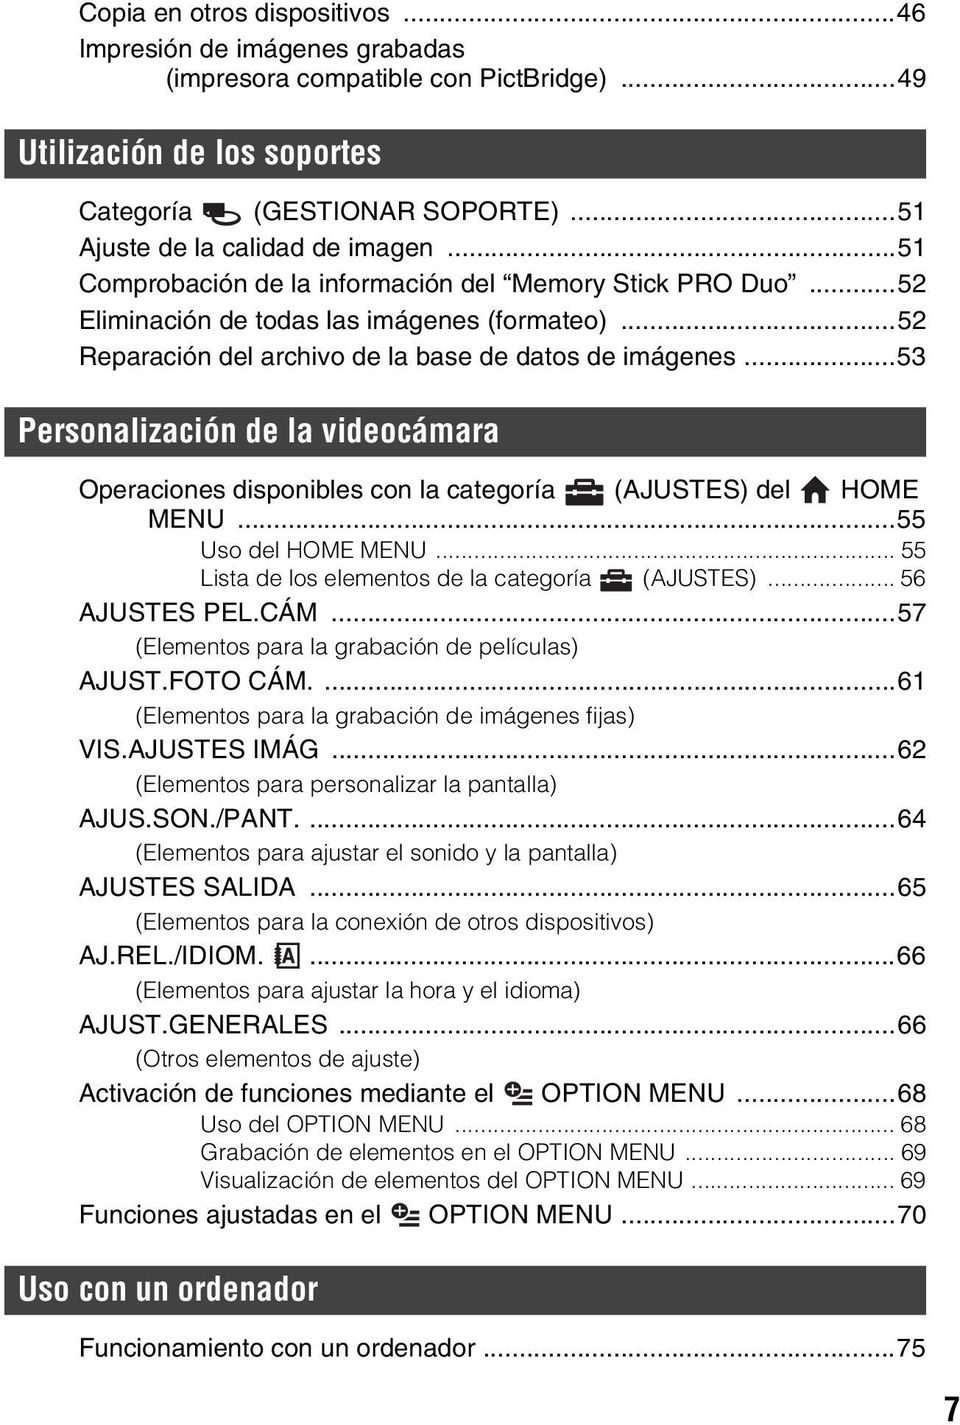 ..53 Personalización de la videocámara Operaciones disponibles con la categoría (AJUSTES) del HOME MENU...55 Uso del HOME MENU... 55 Lista de los elementos de la categoría (AJUSTES)... 56 AJUSTES PEL.